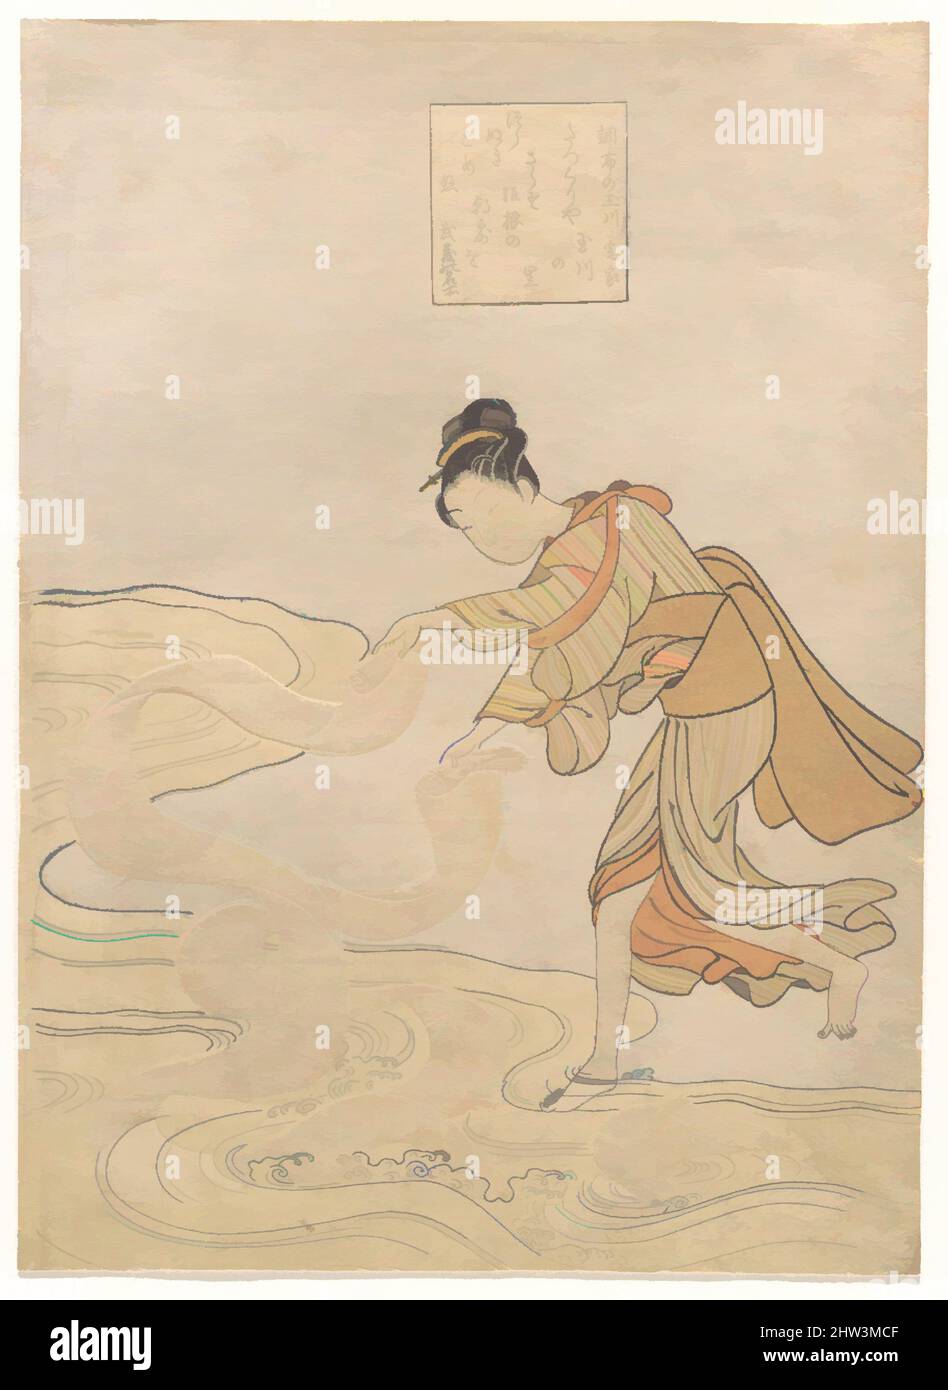 Arte ispirata al fiume Jewel a Chōfu (Chōfu no Tamagawa), periodo Edo (1615-1868), ca. 1768, Giappone, stampa a blocchi di legno policromi; inchiostro e colore su carta, 10 5/8 x 7 3/4 pollici (27 x 19,7 cm), stampe, Suzuki Harunobu (giapponese, 1725–1770), Tatsukuri (o Tetsukuri), Nella zona di Musashi, opere classiche modernizzate da Artotop con un tuffo di modernità. Forme, colore e valore, impatto visivo accattivante sulle emozioni artistiche attraverso la libertà delle opere d'arte in modo contemporaneo. Un messaggio senza tempo che persegue una nuova direzione selvaggiamente creativa. Artisti che si rivolgono al supporto digitale e creano l'NFT Artotop Foto Stock